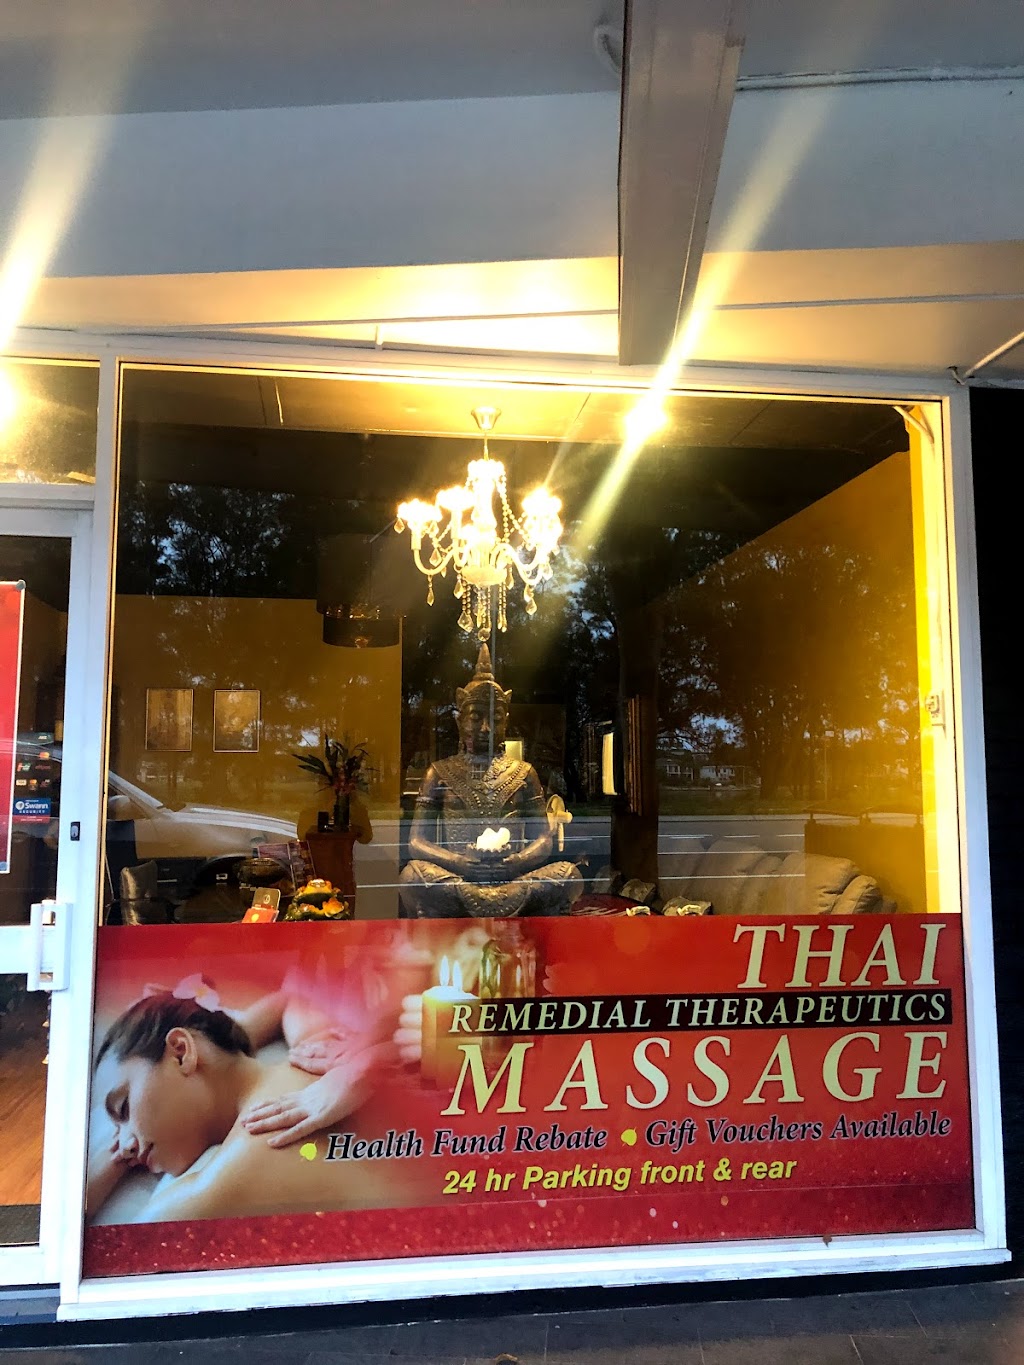 Phannarra Thai Massage | 1463 Pittwater Rd, North Narrabeen NSW 2101, Australia | Phone: 0452 589 848